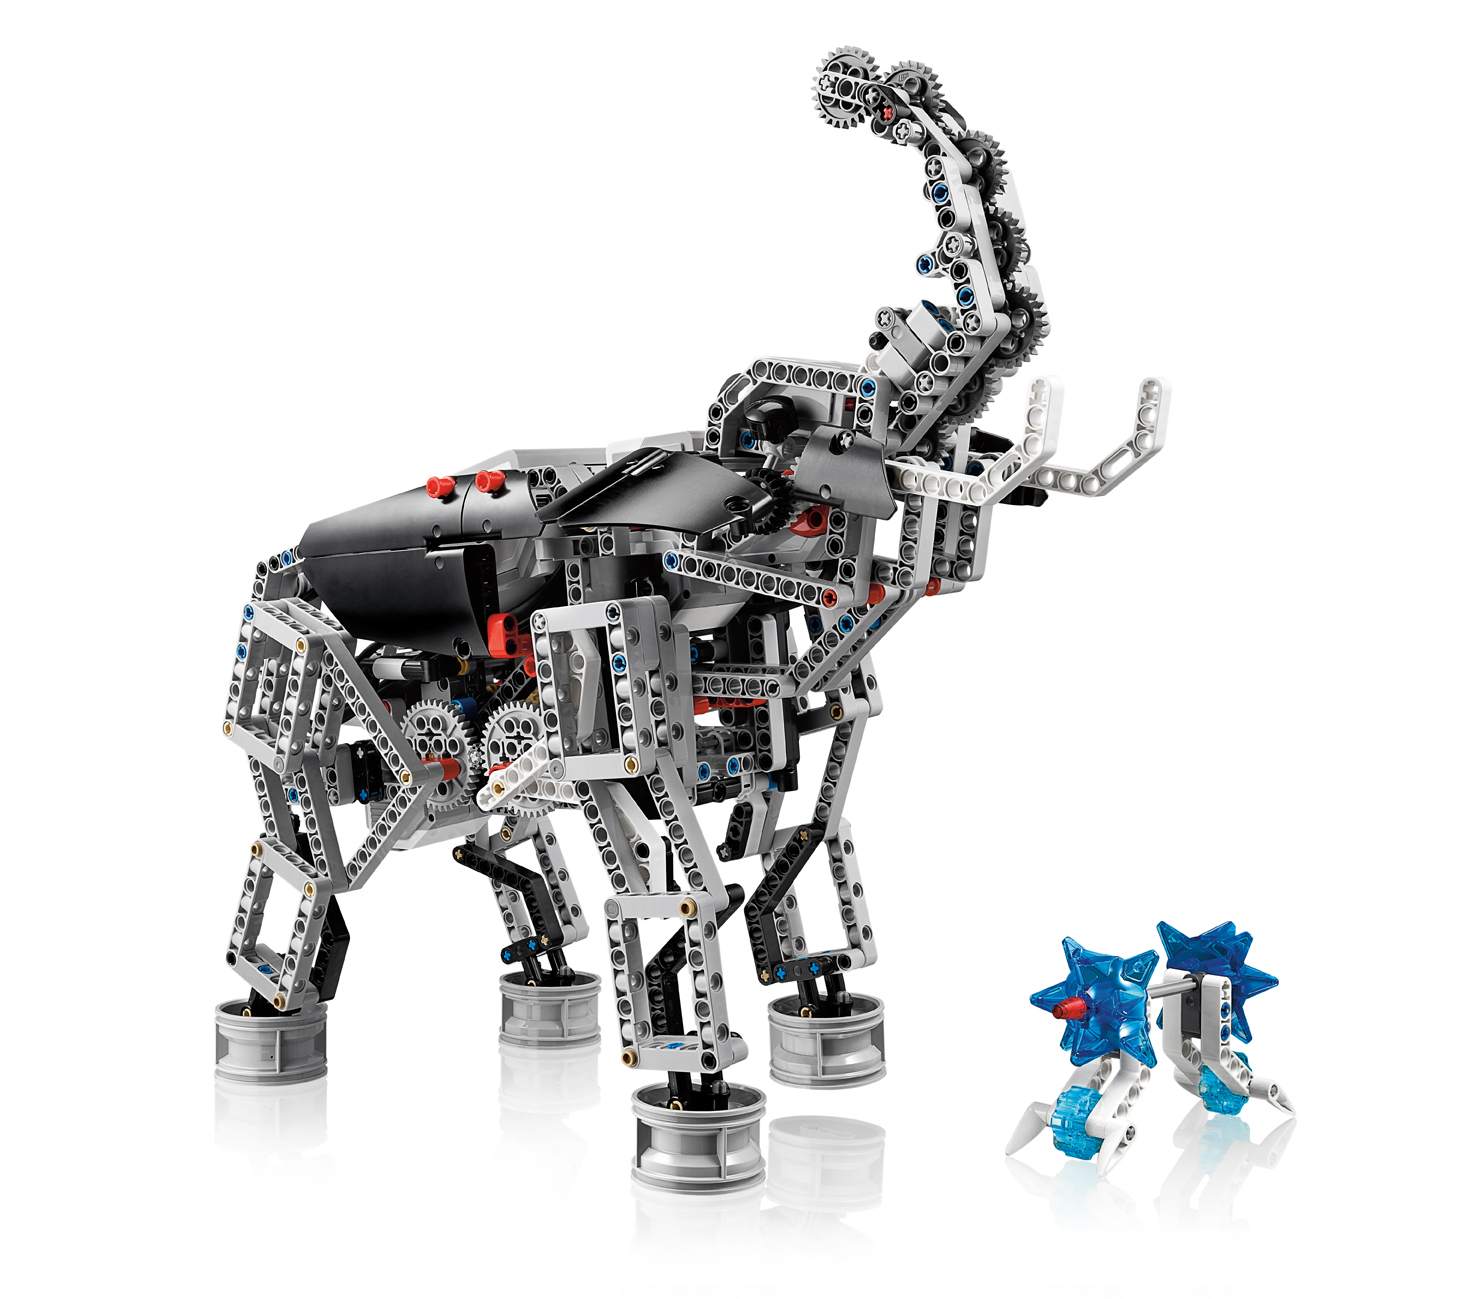 ev3 lego robotics